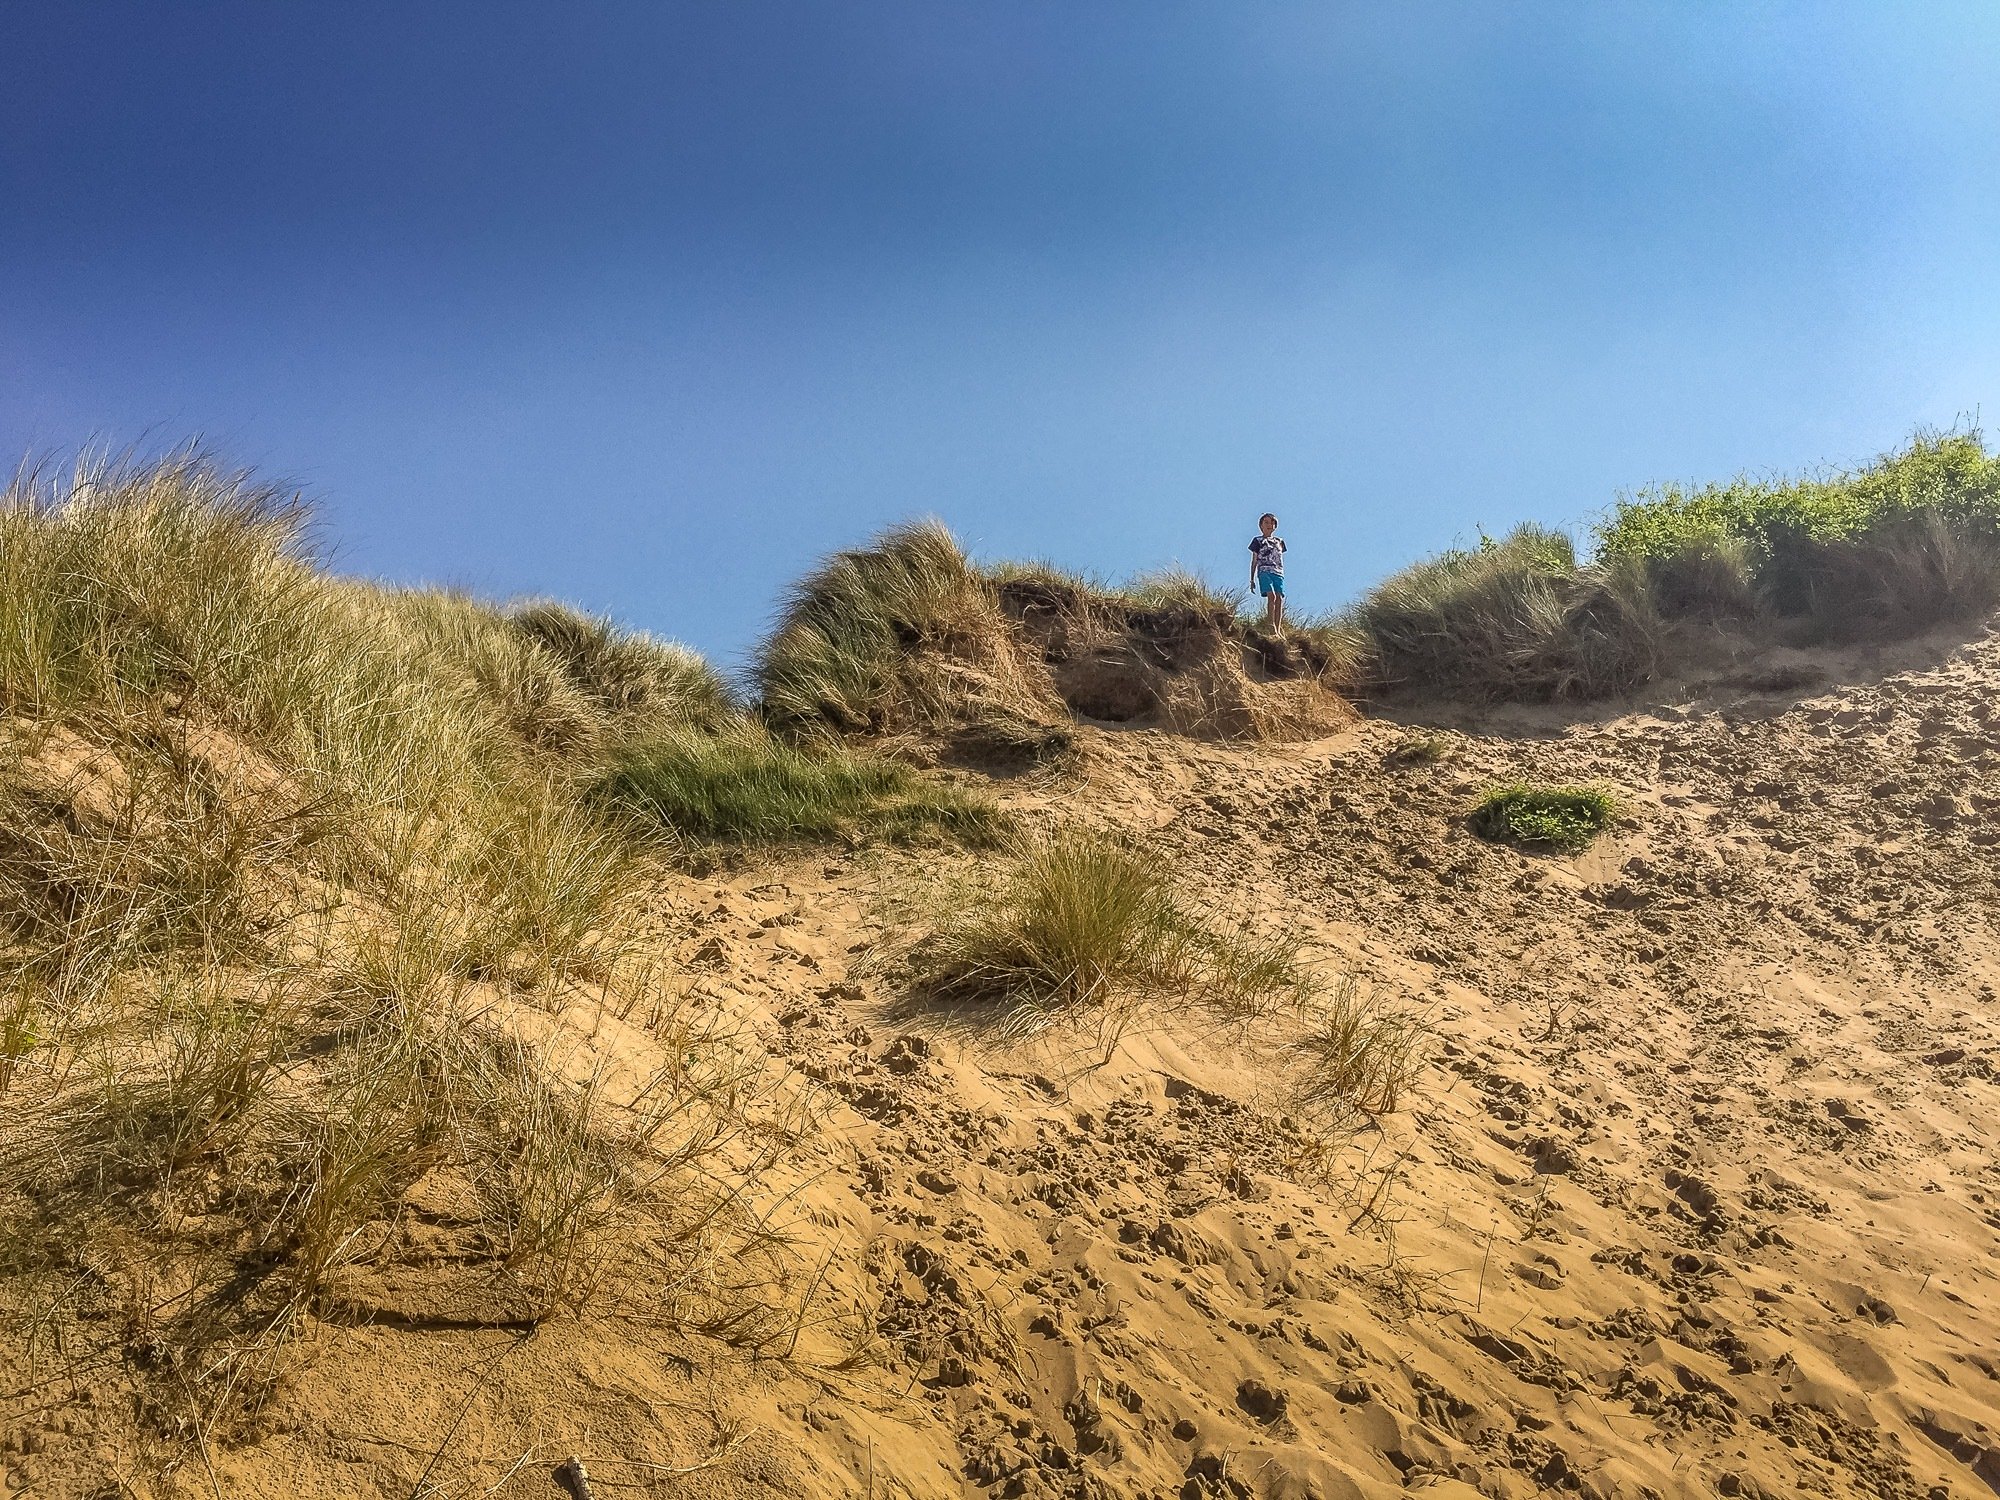 Sand dunes at Presthaven